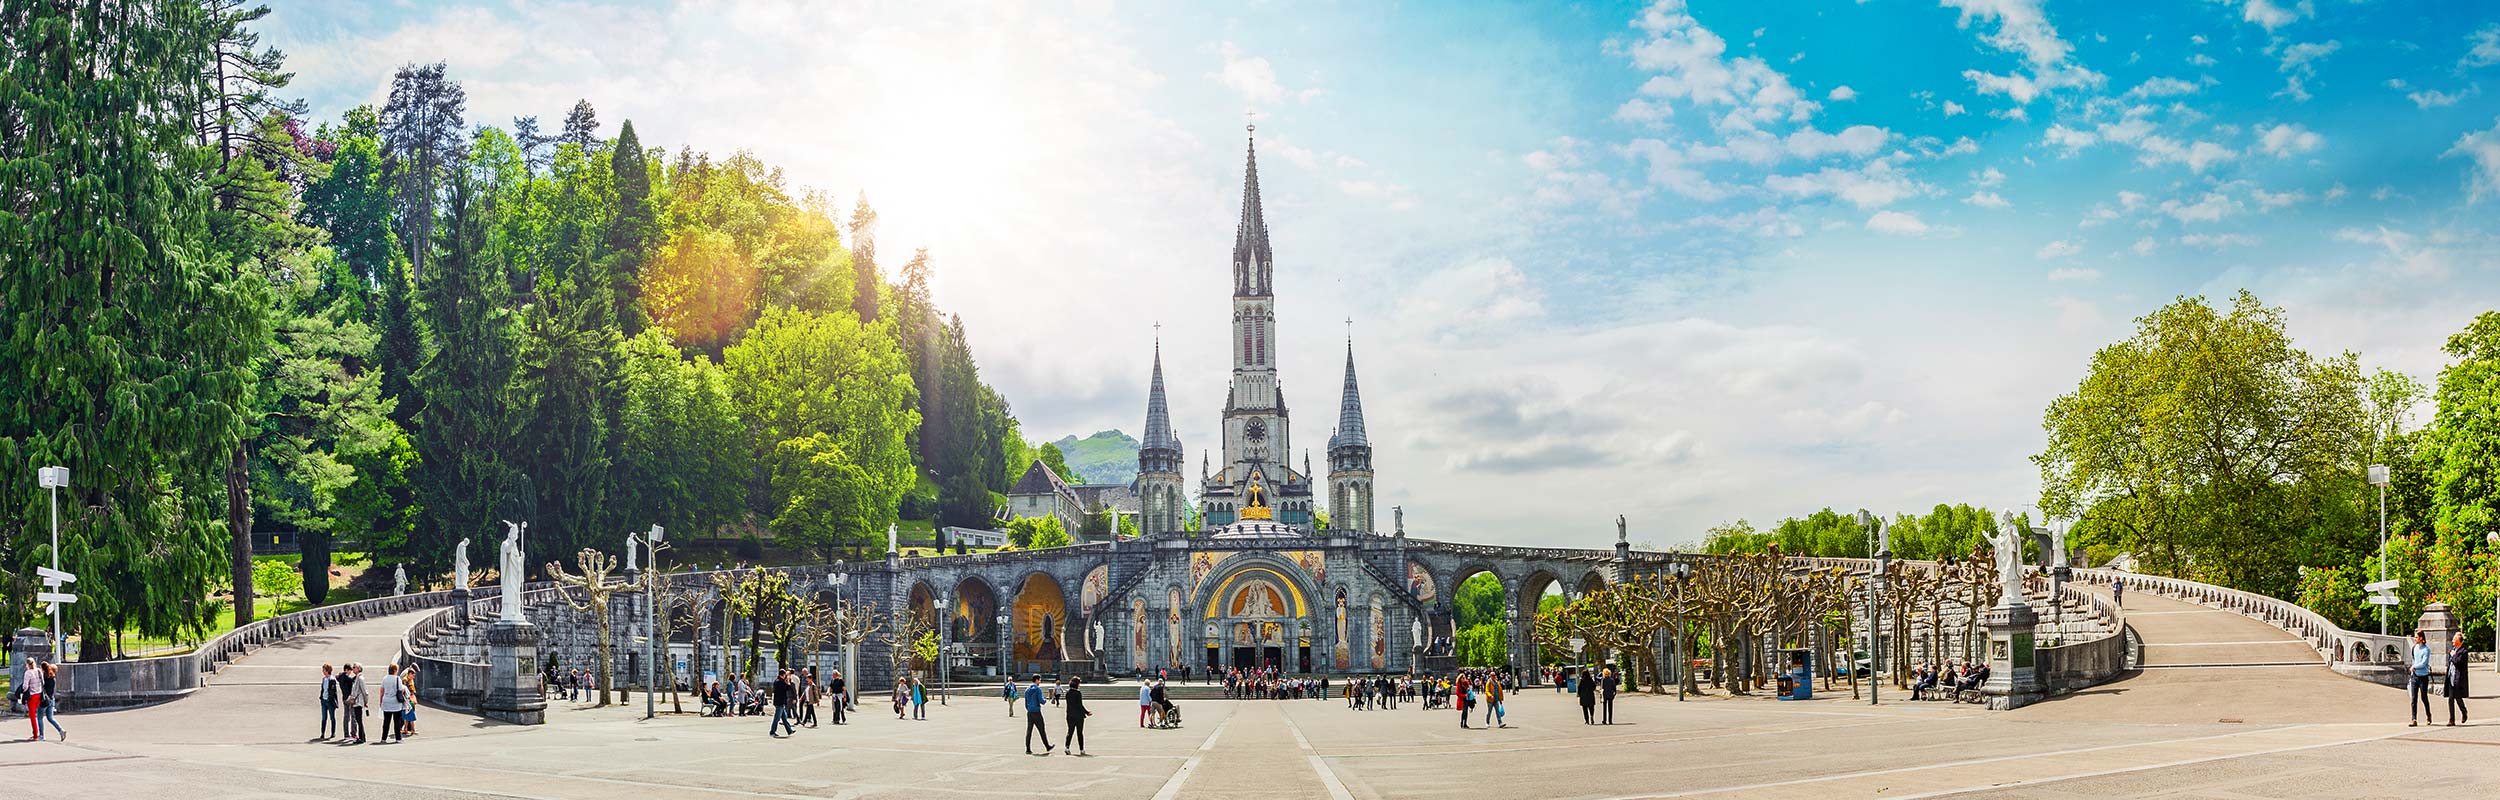 Wallfahrtskirche Lourdes